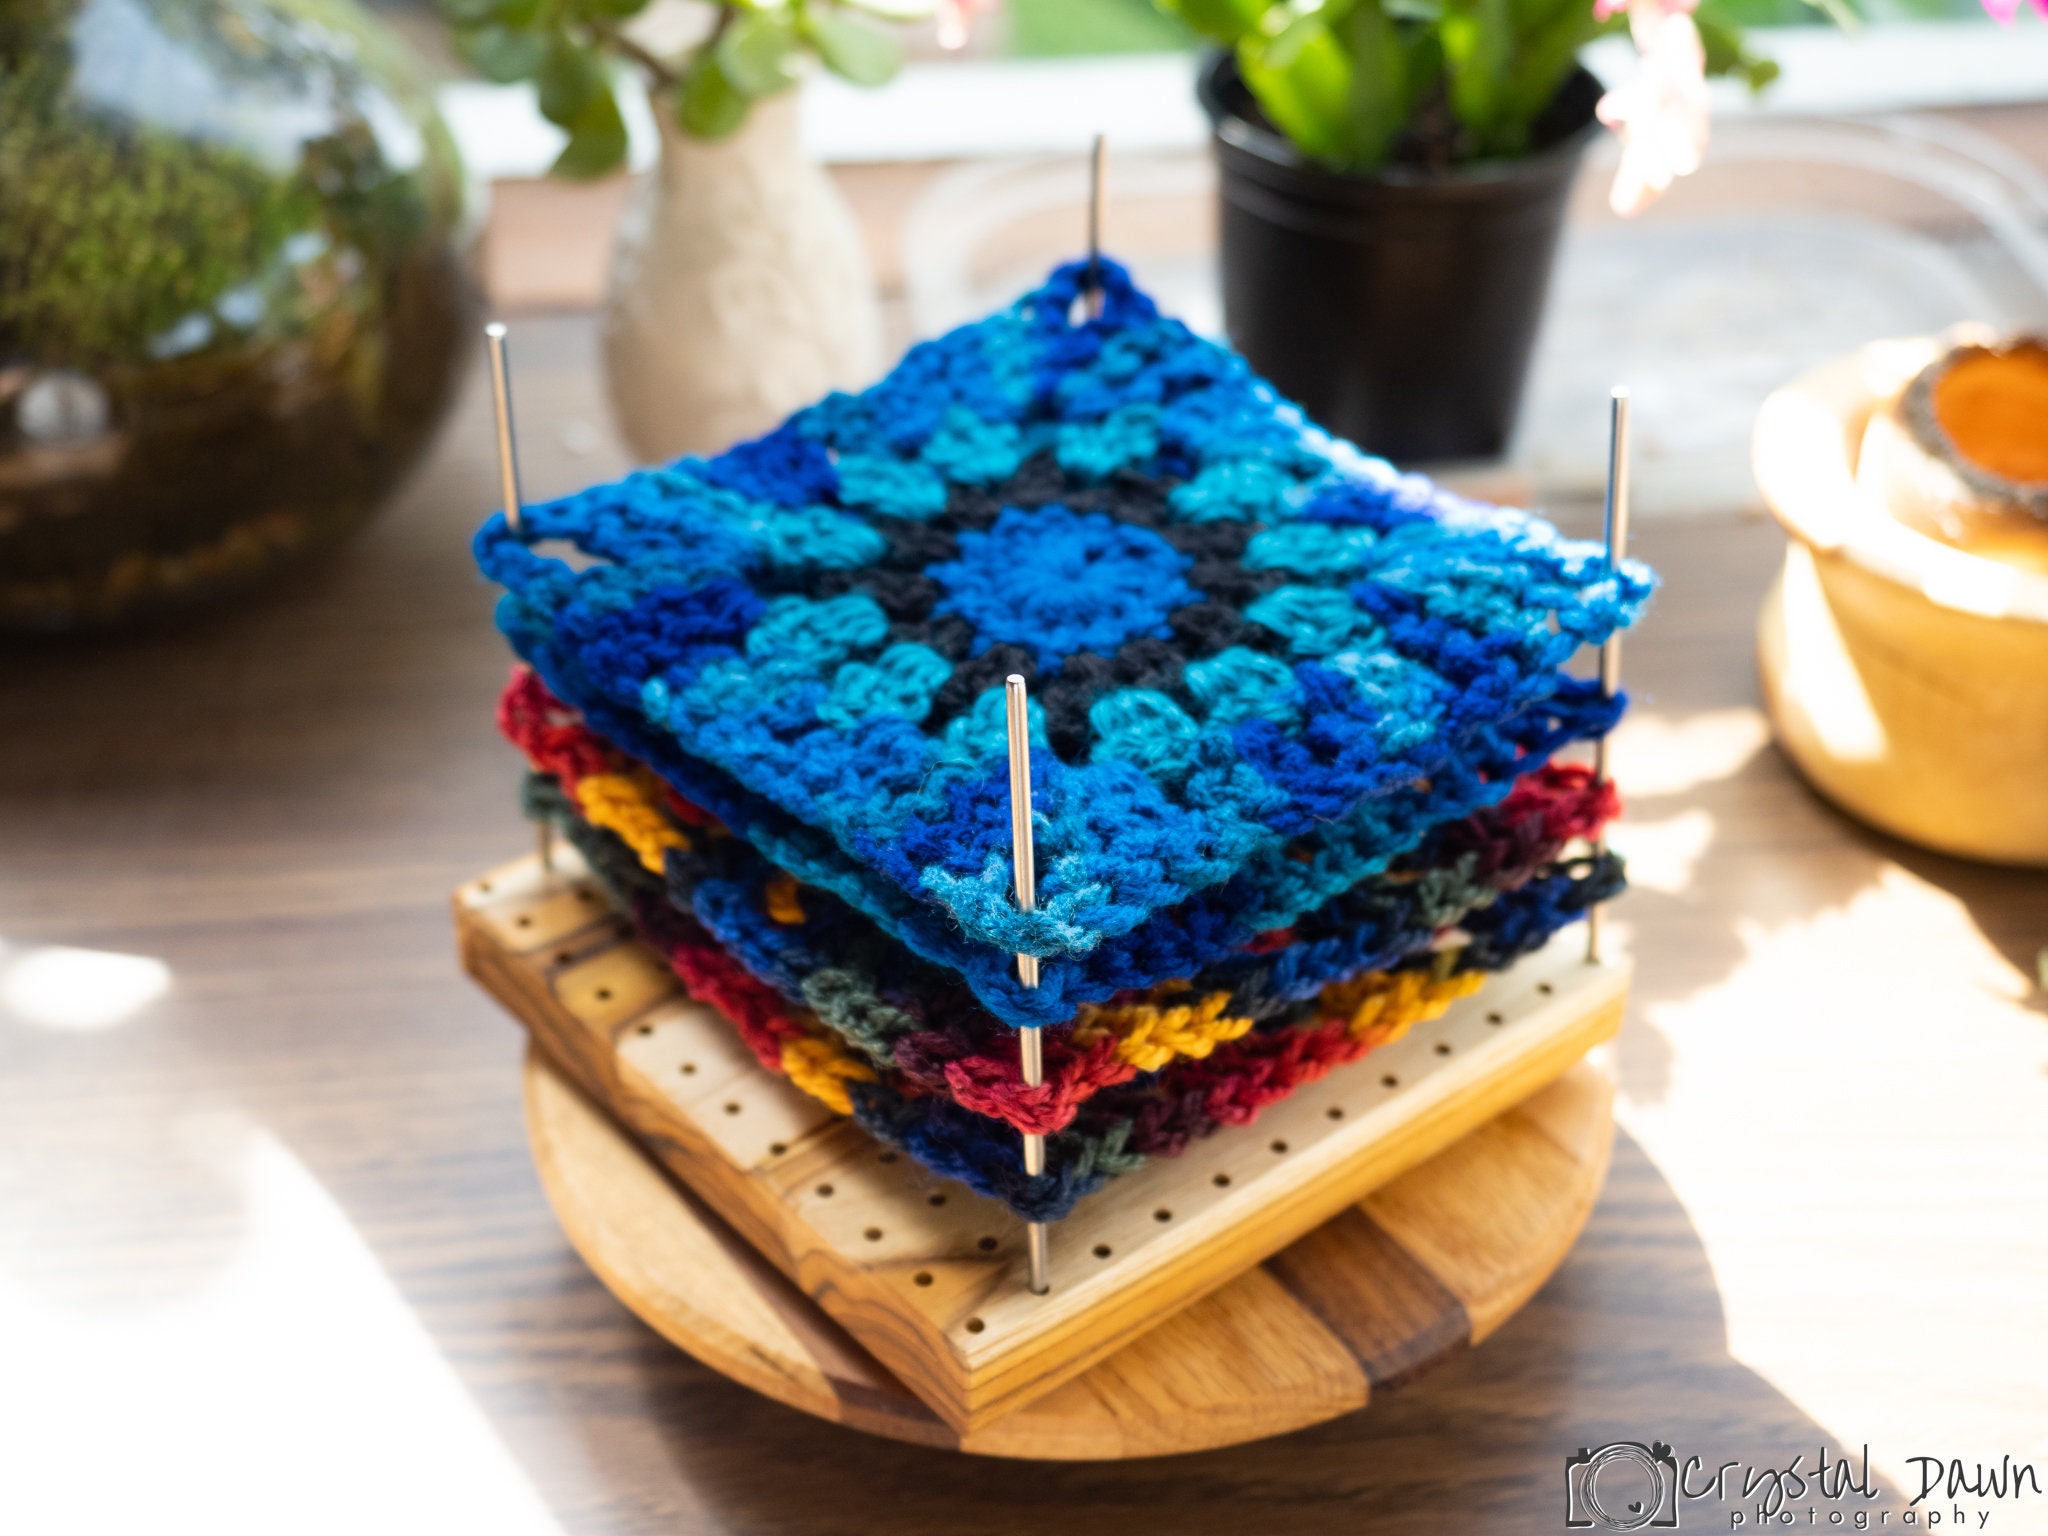 4 Pack Crochet/knitting Blocking Pin Stabiliser Squares Blocking